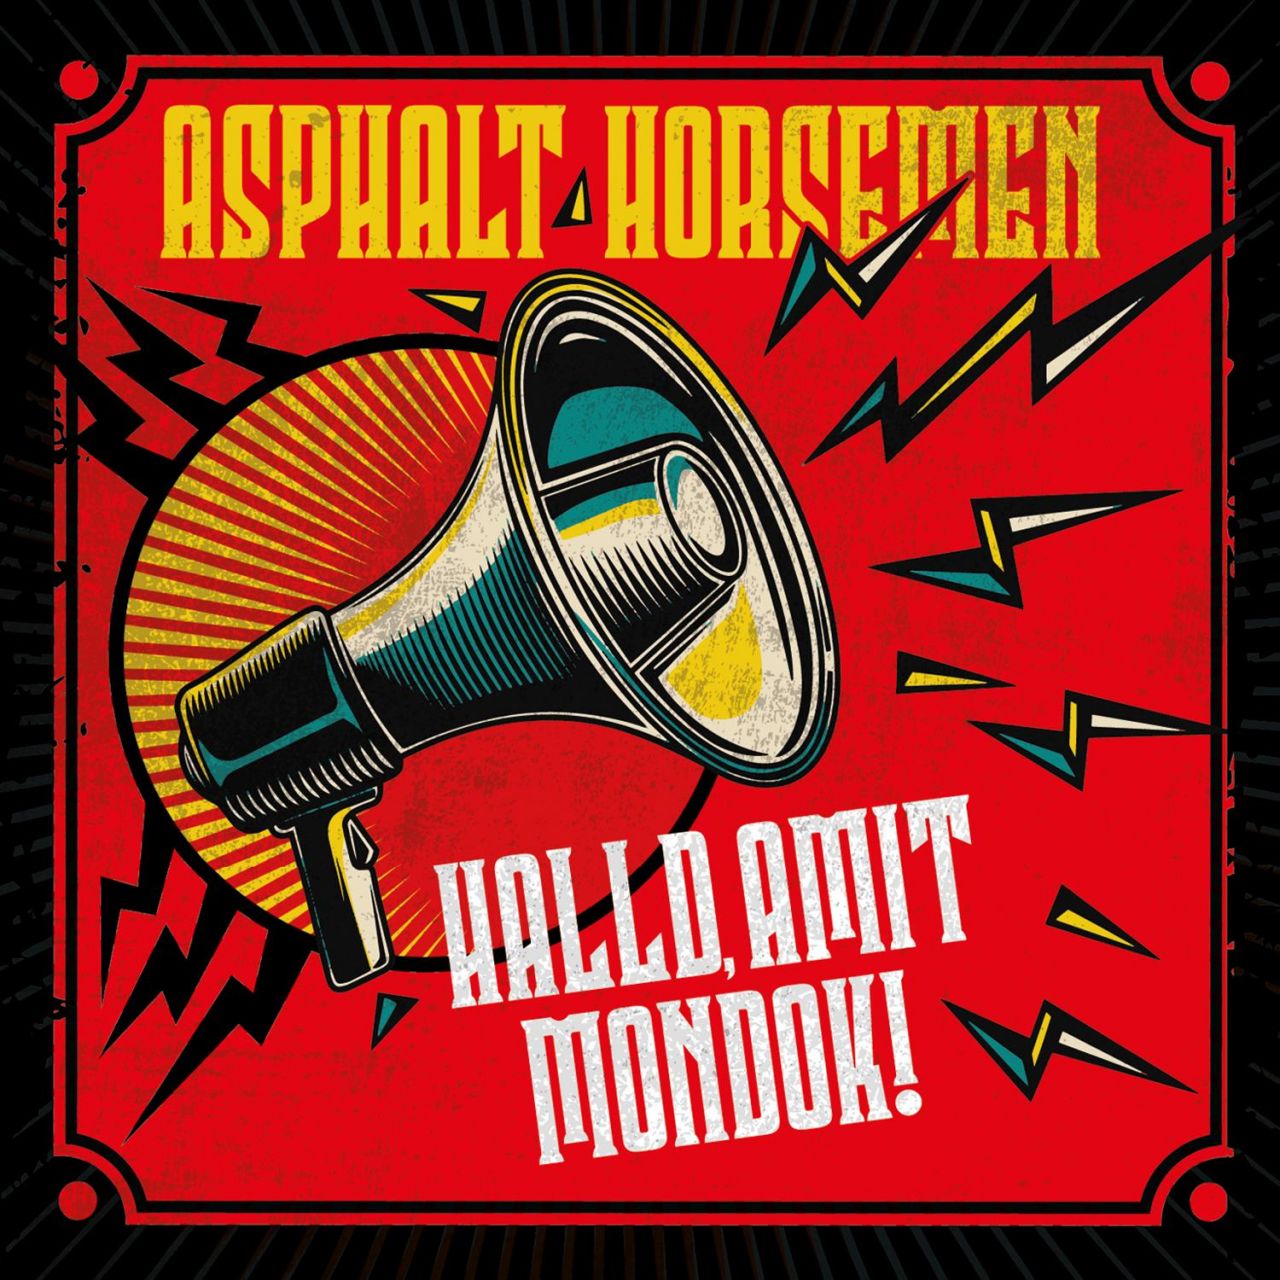 Asphalt Horsemen: Halld, amit mondok! (CD)